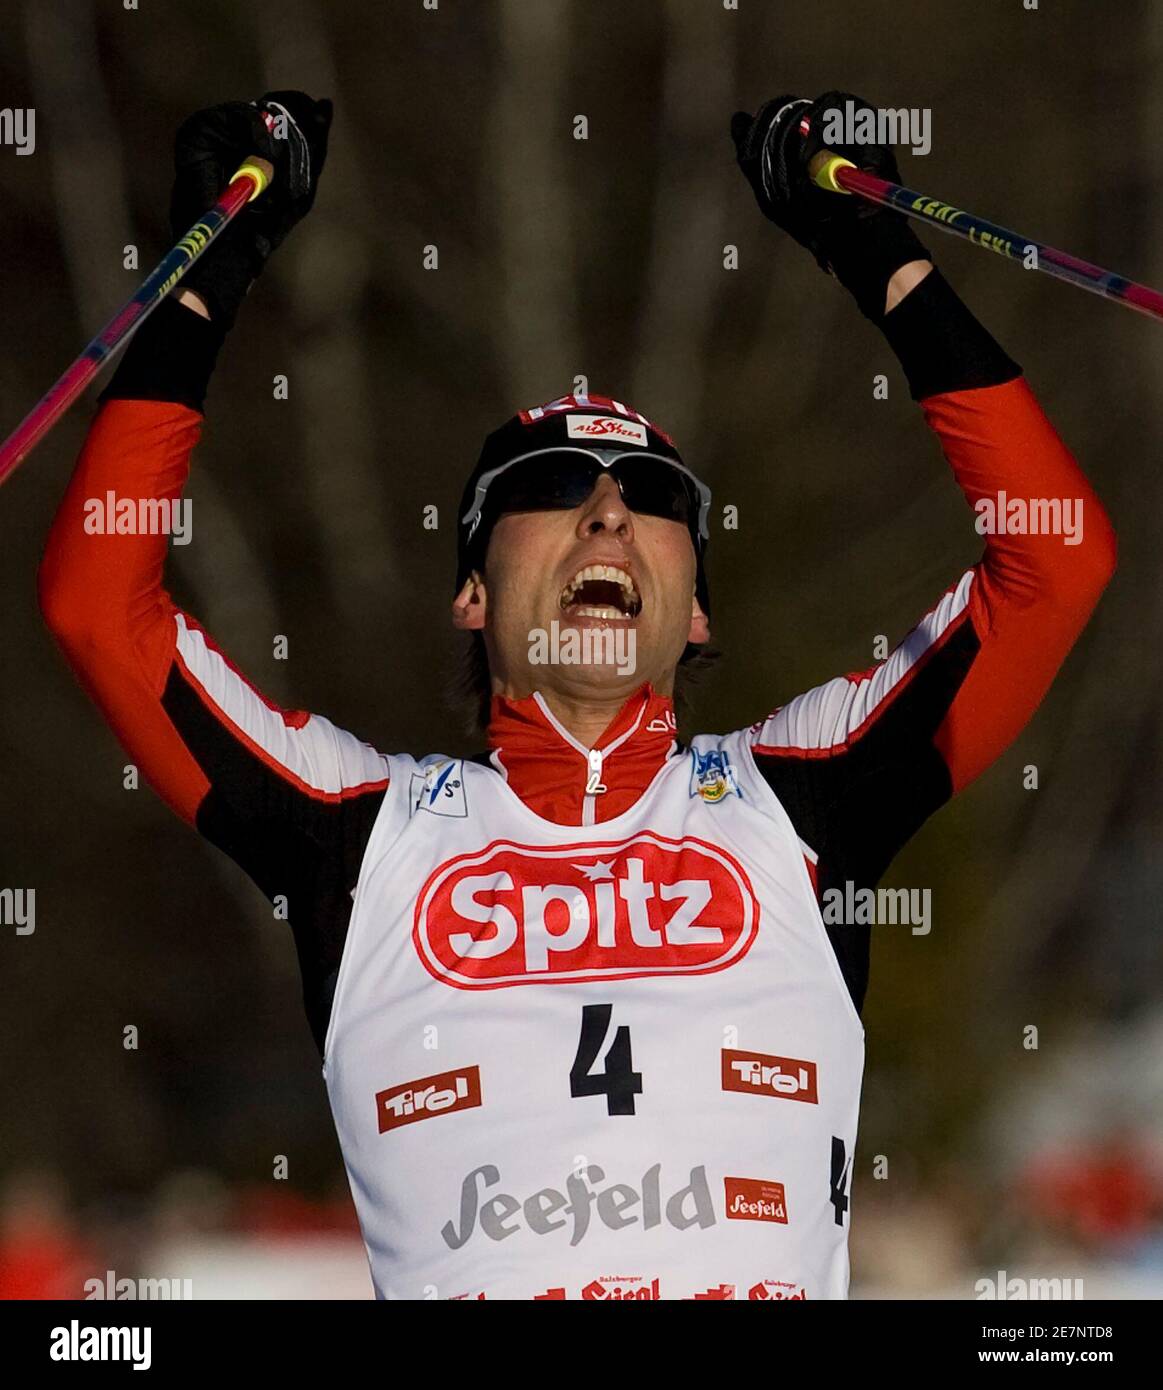 Mario Stecher in Austria celebra la sua vittoria della Coppa del mondo combinata nordica a Seefeld, 7 febbraio 2009. REUTERS/Miro Kuzmanovic (AUSTRIA) Foto Stock